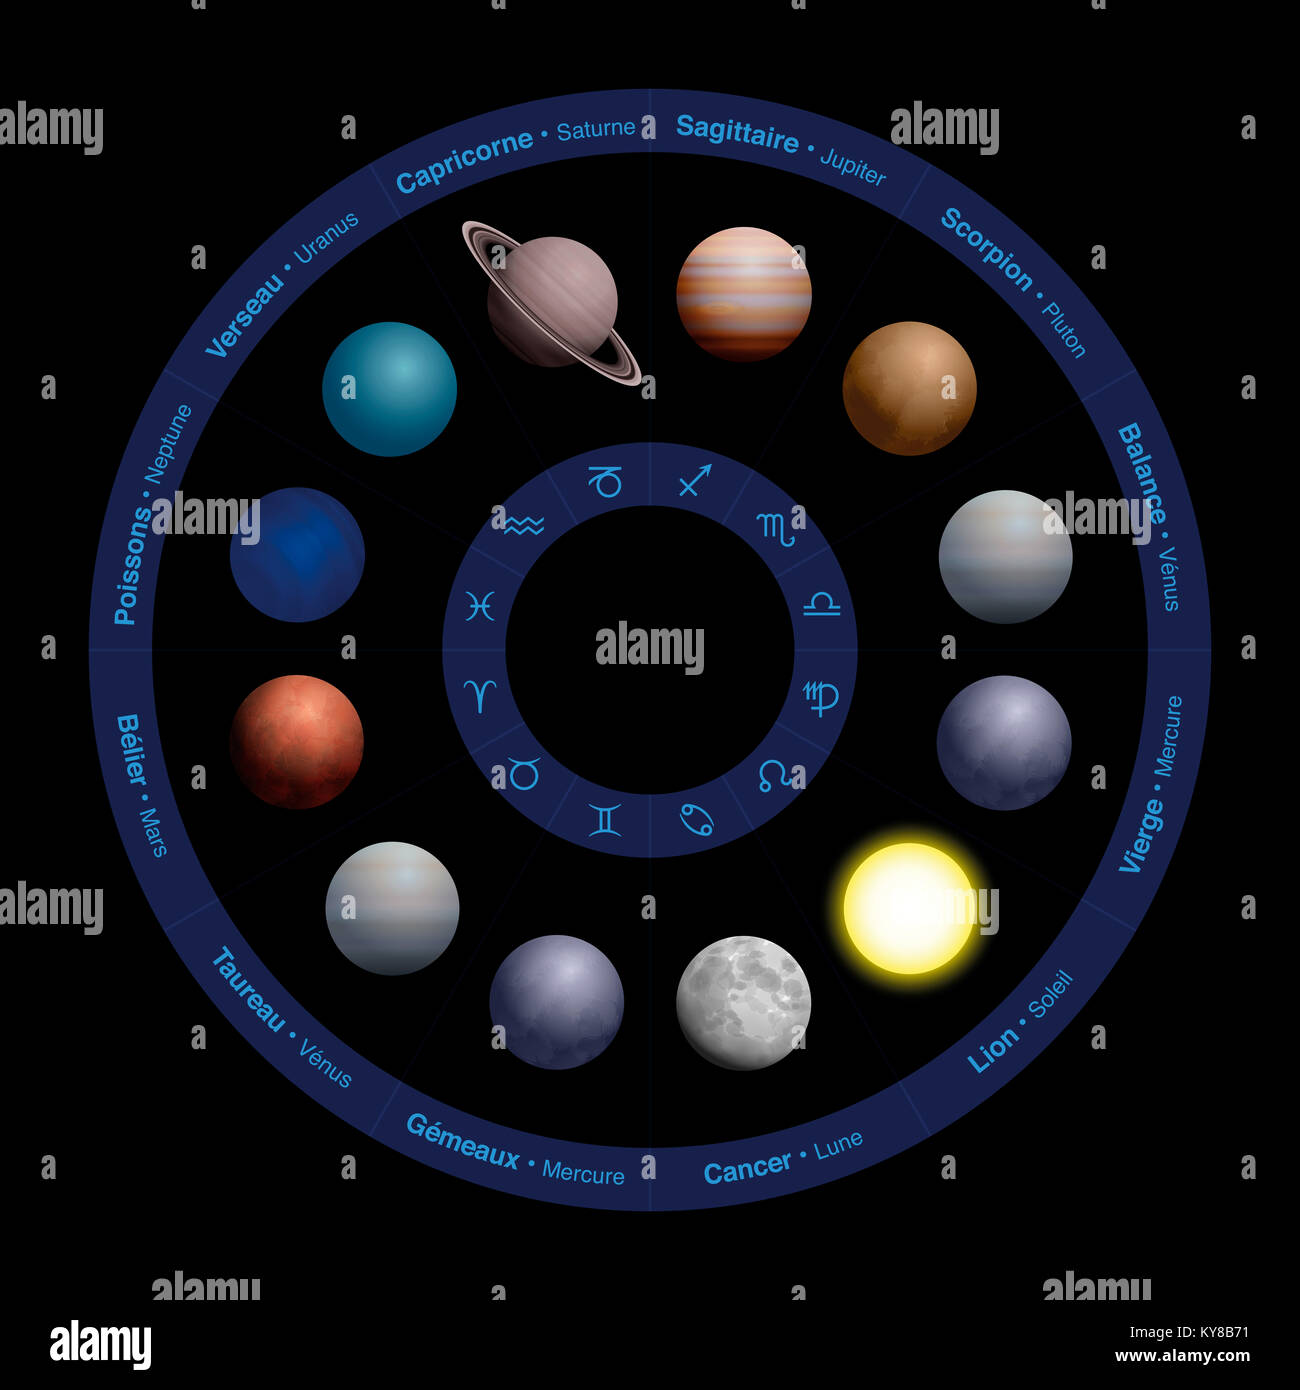 Planètes de l'astrologie - NOMS FRANÇAIS, design réaliste, dans le cercle du zodiaque - avec des noms dans le cercle extérieur et des symboles dans le cercle intérieur. Banque D'Images